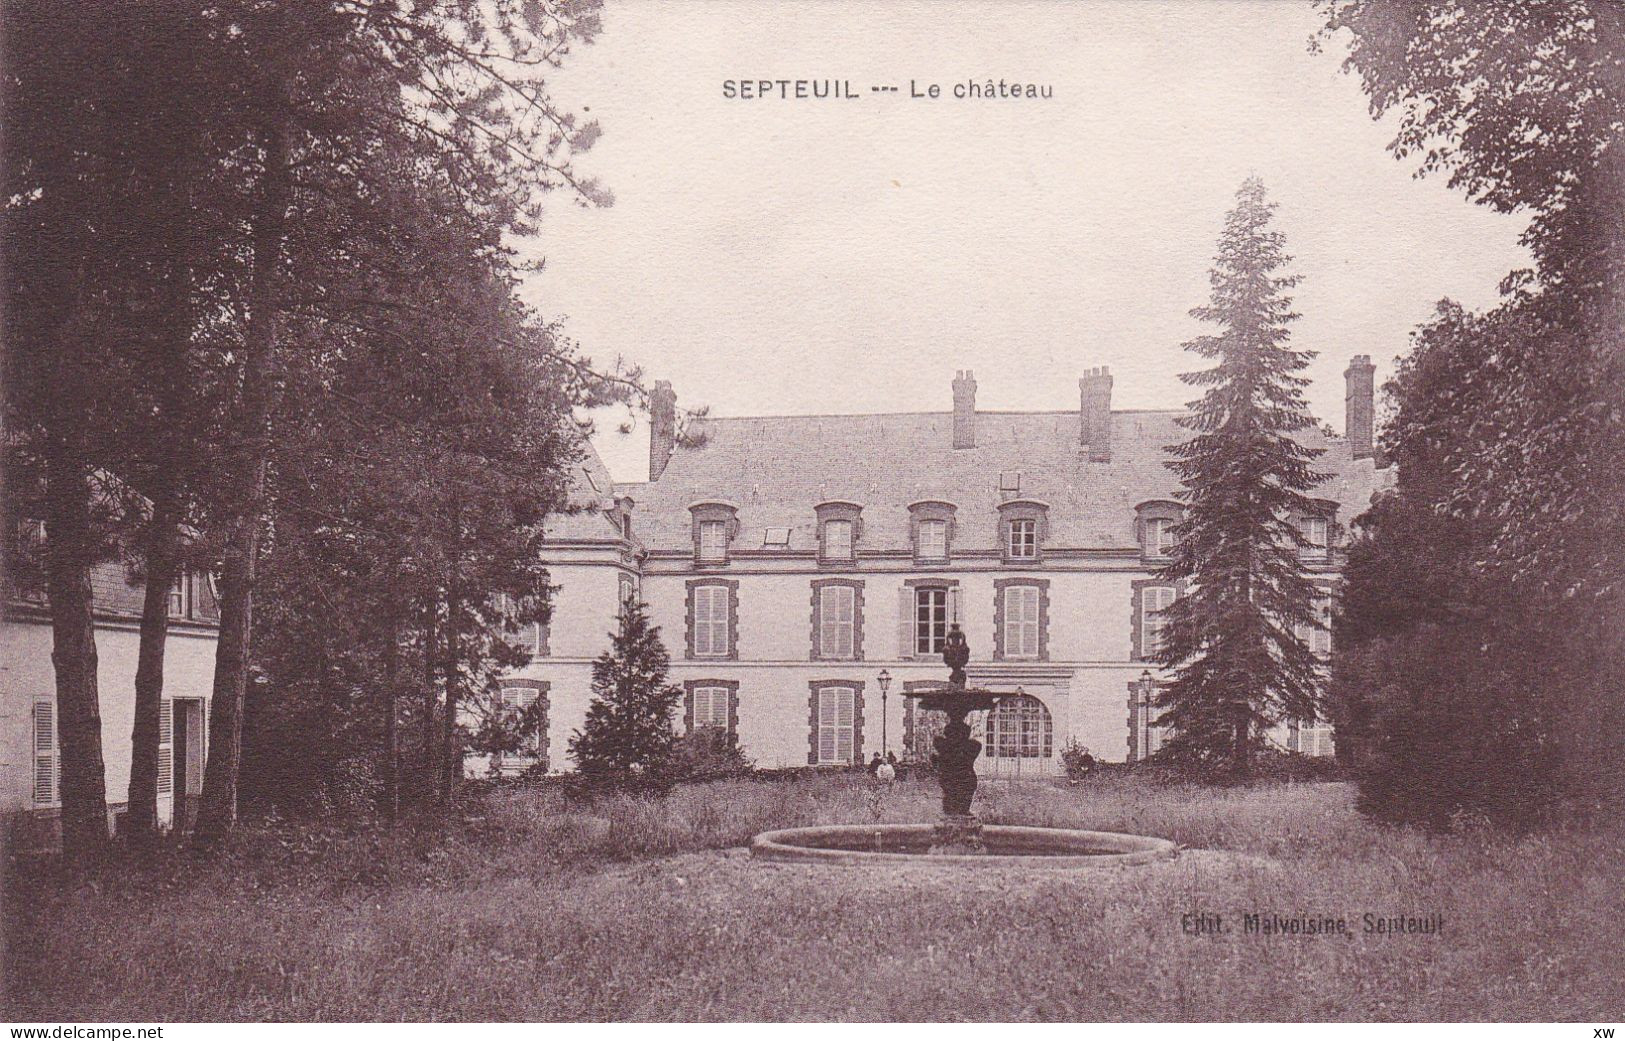 SEPTEUIL -78- Le Château - A16836-37 - Septeuil